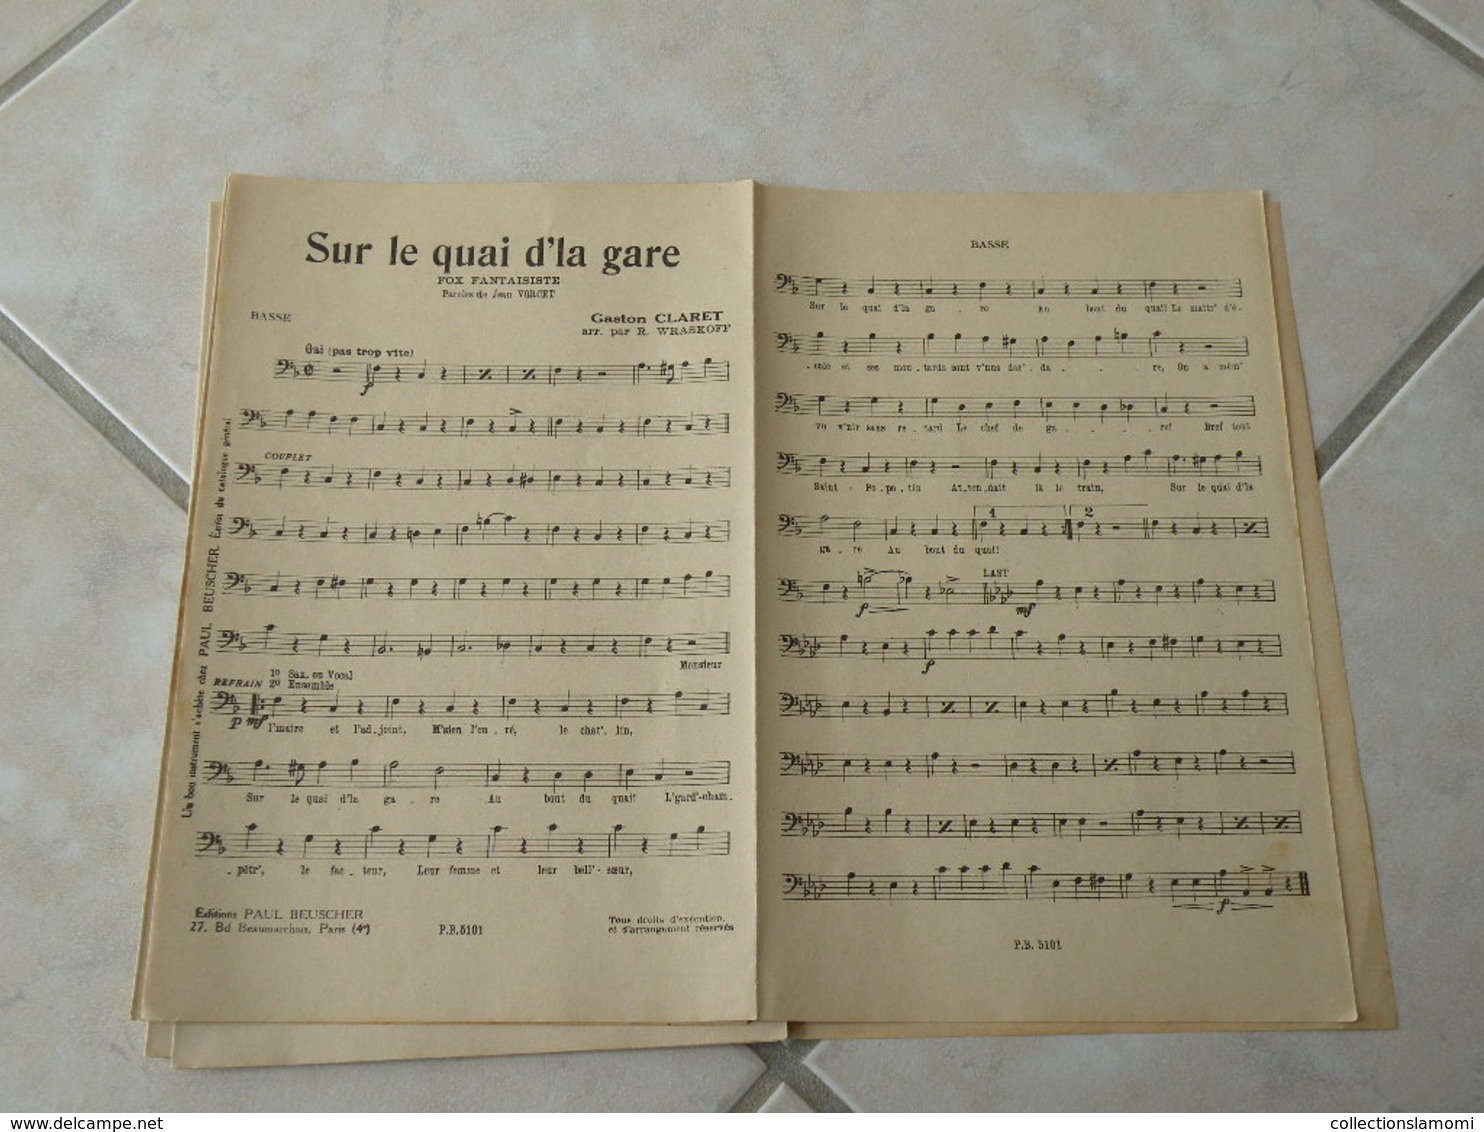 Sur le quai d'la gare -(Paroles Jean Vorcet)-(Musique Gaston Claret) Partition1935 pour orchestre